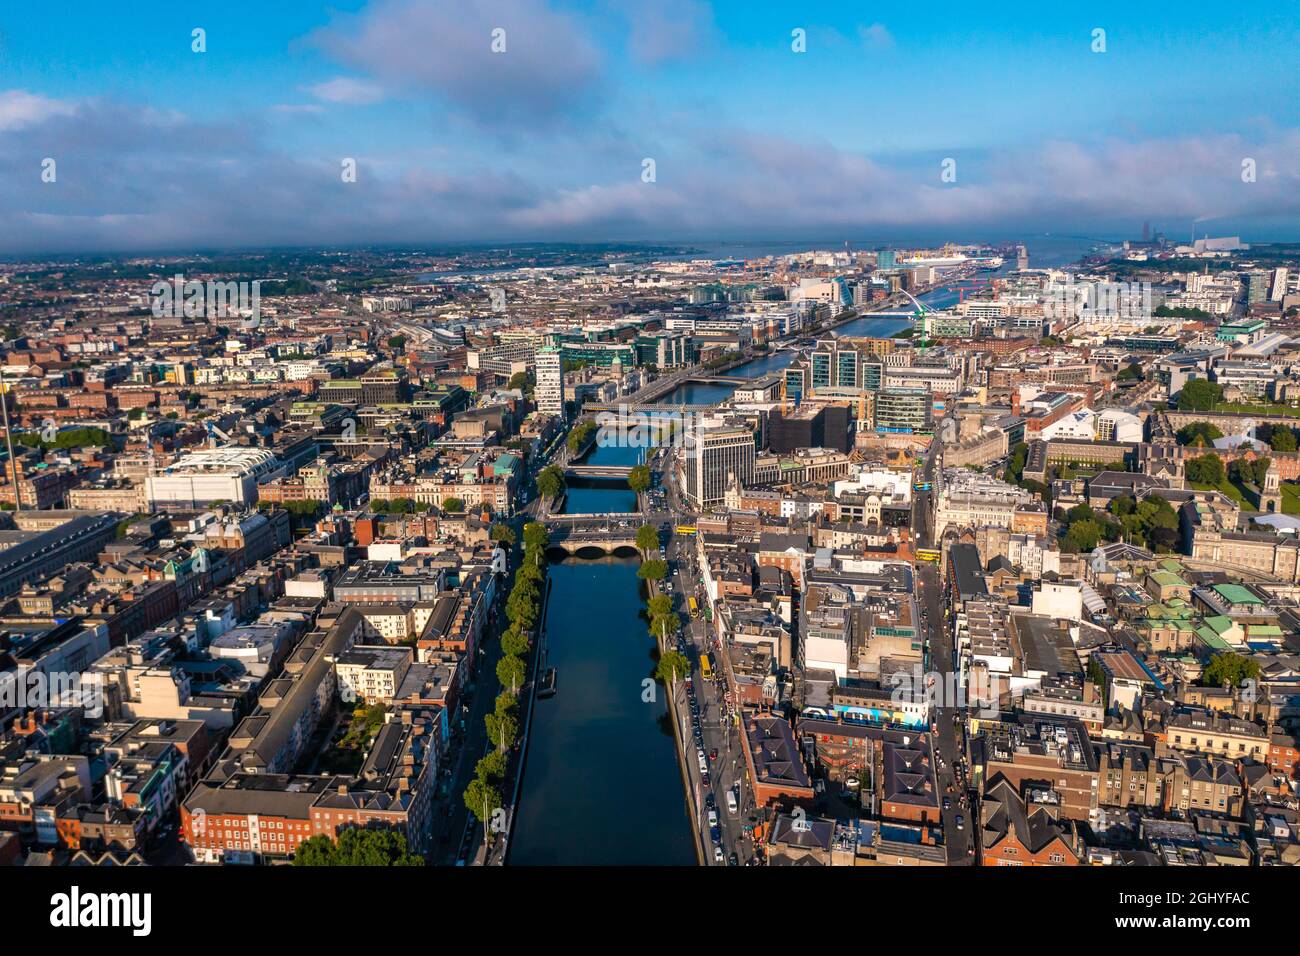 Colpo più stabilito dello skyline di Dublino con il fiume che scorre con il ponte che collega due lati di strada circondato da edifici durante una giornata nuvolosa Foto Stock